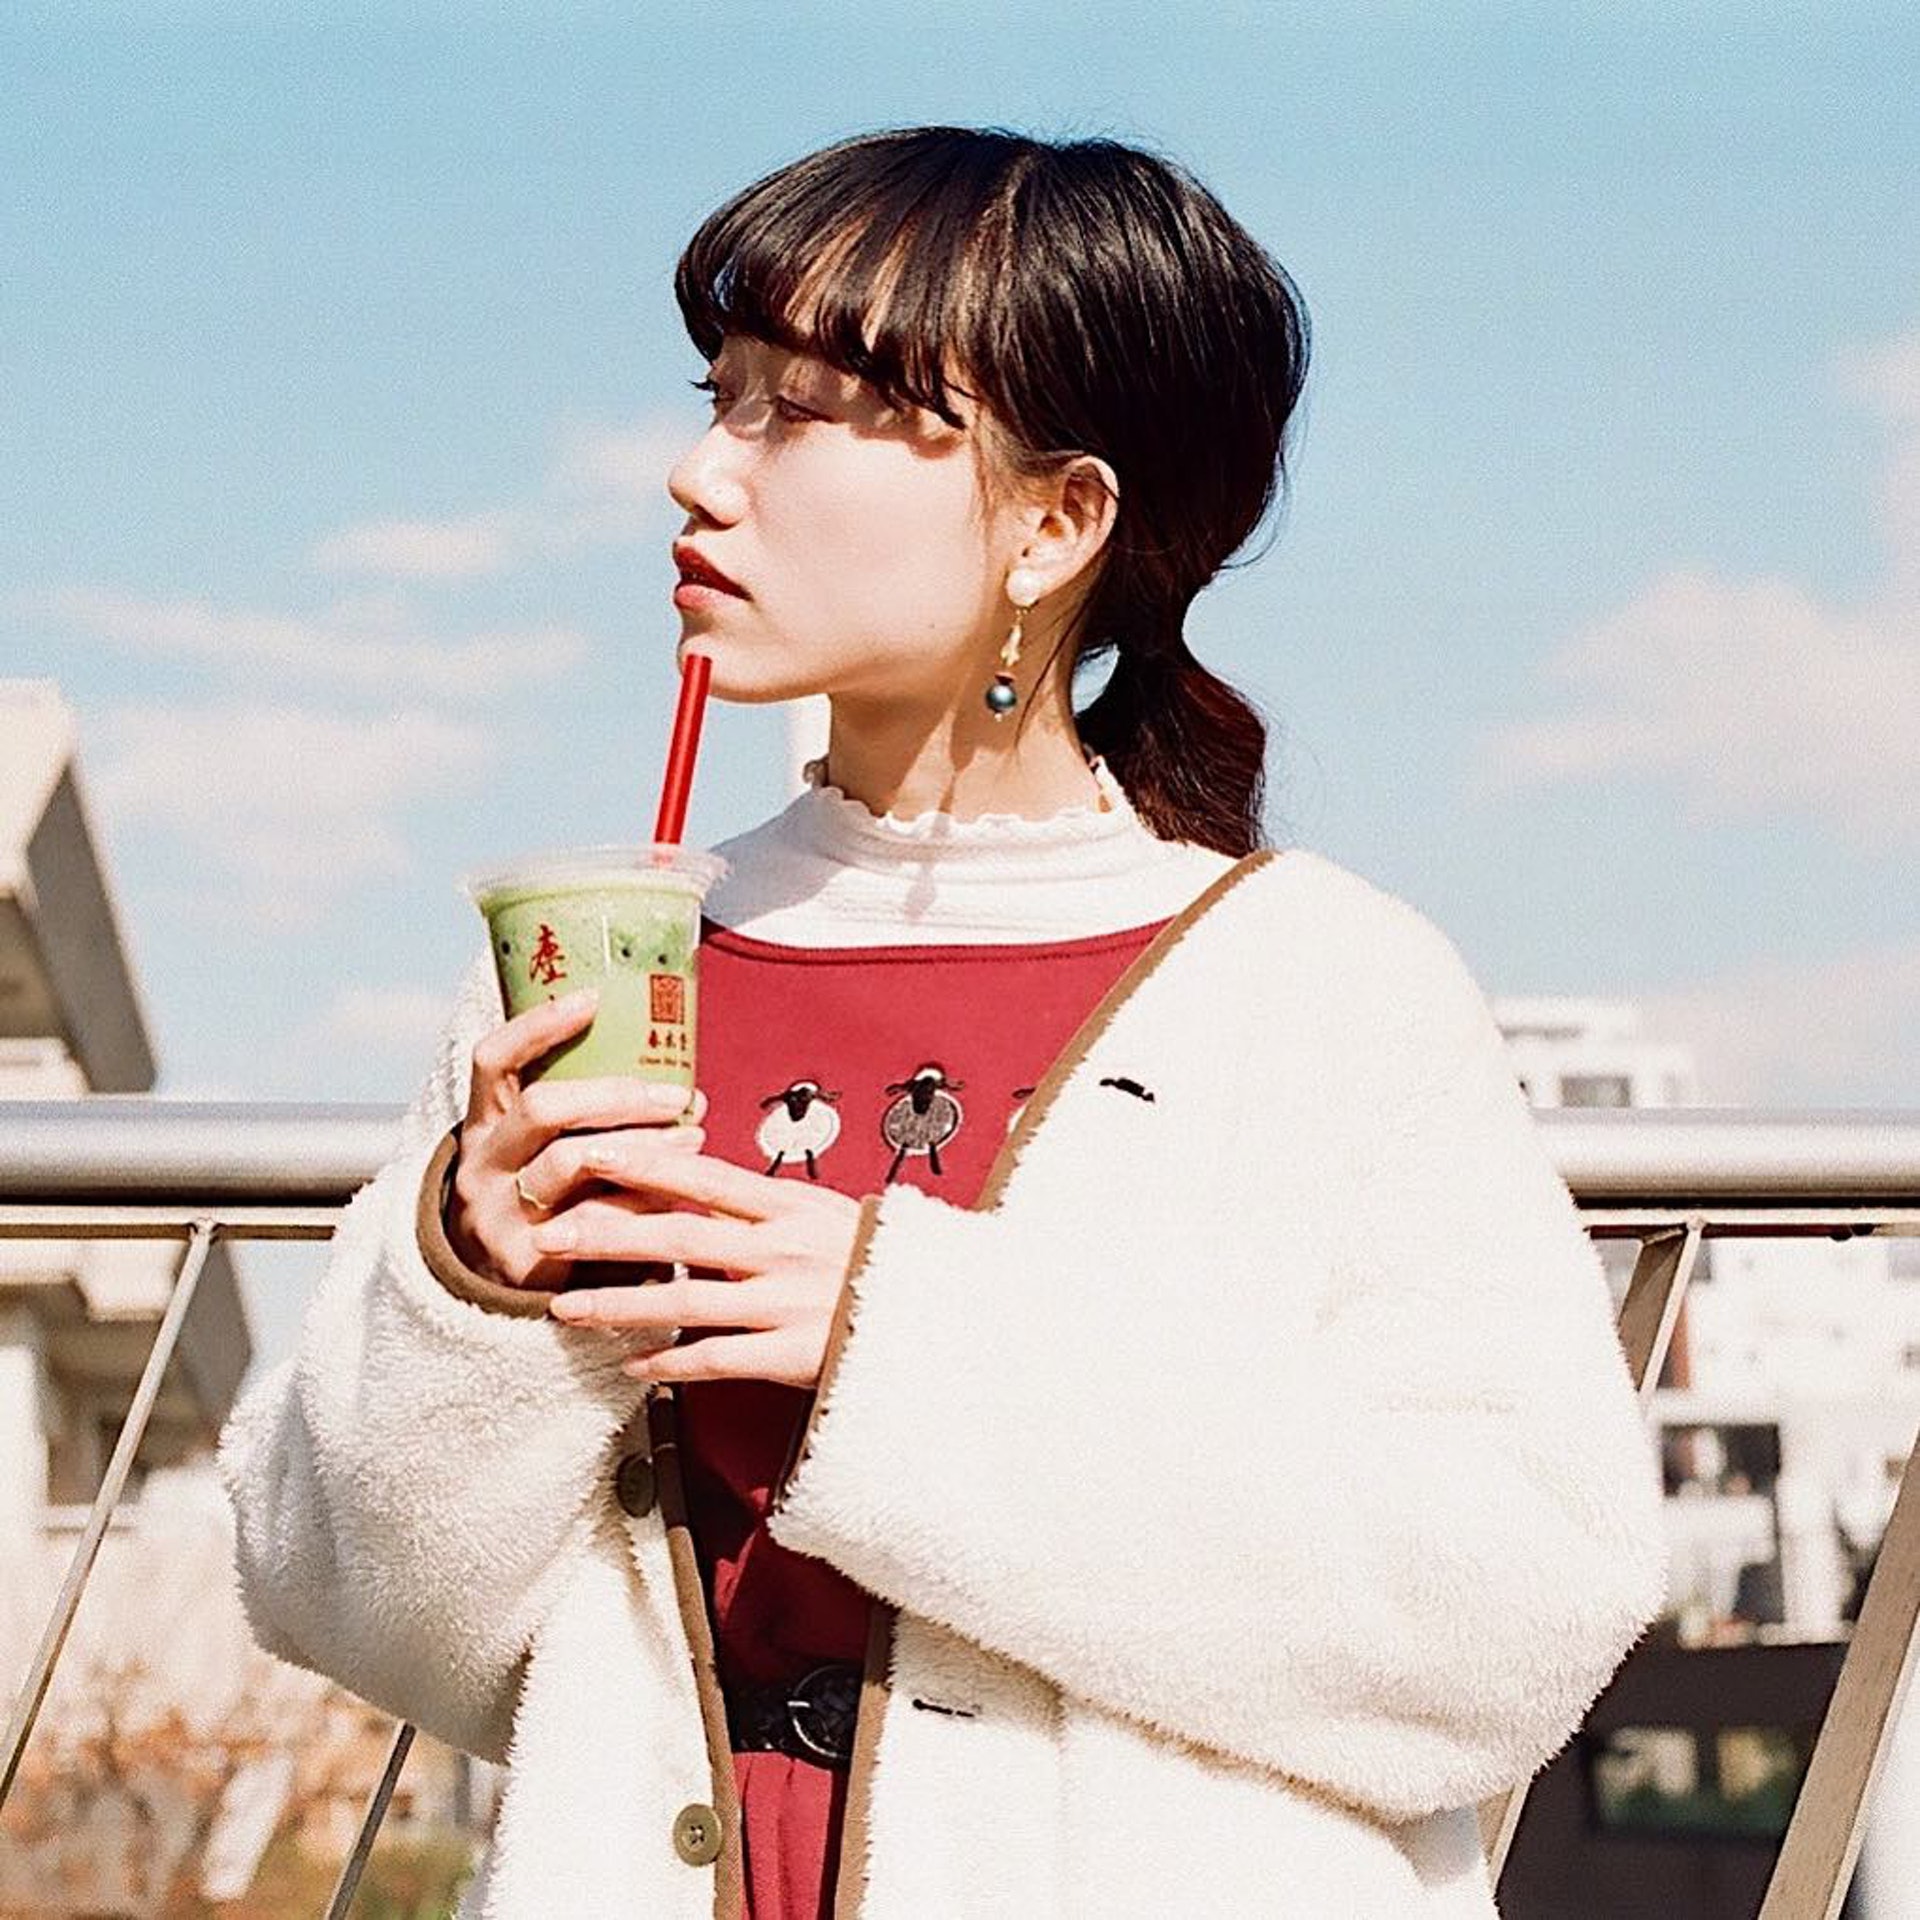 珍珠奶茶非常適合拍照貼在Instagram（IG）上。（Instagram@chunshuitang）